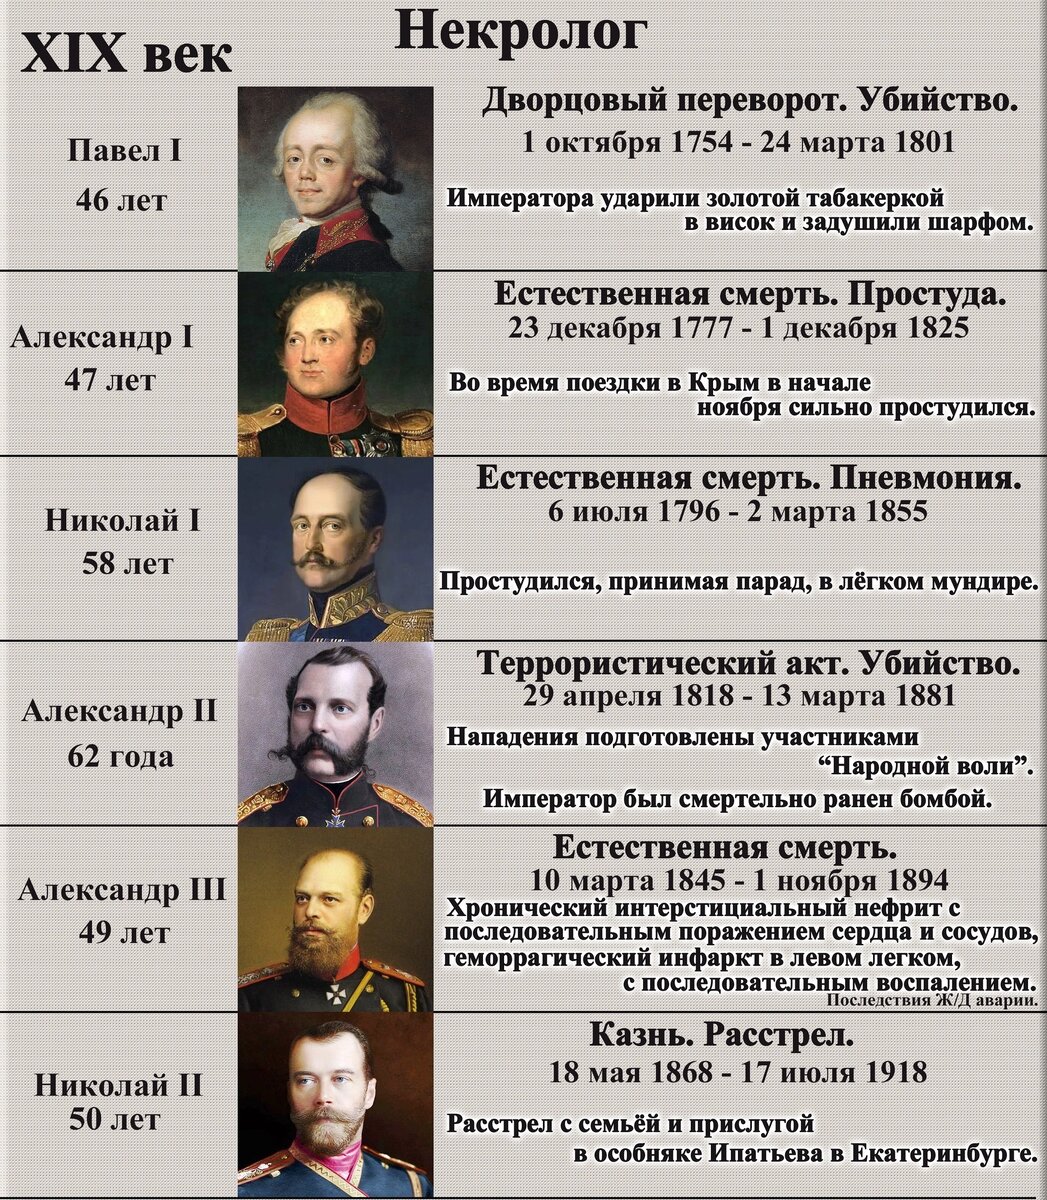 Самое длинное правление в россии. Самая страшная смерть из правителей России. Как называли смерти правителей по очереди.